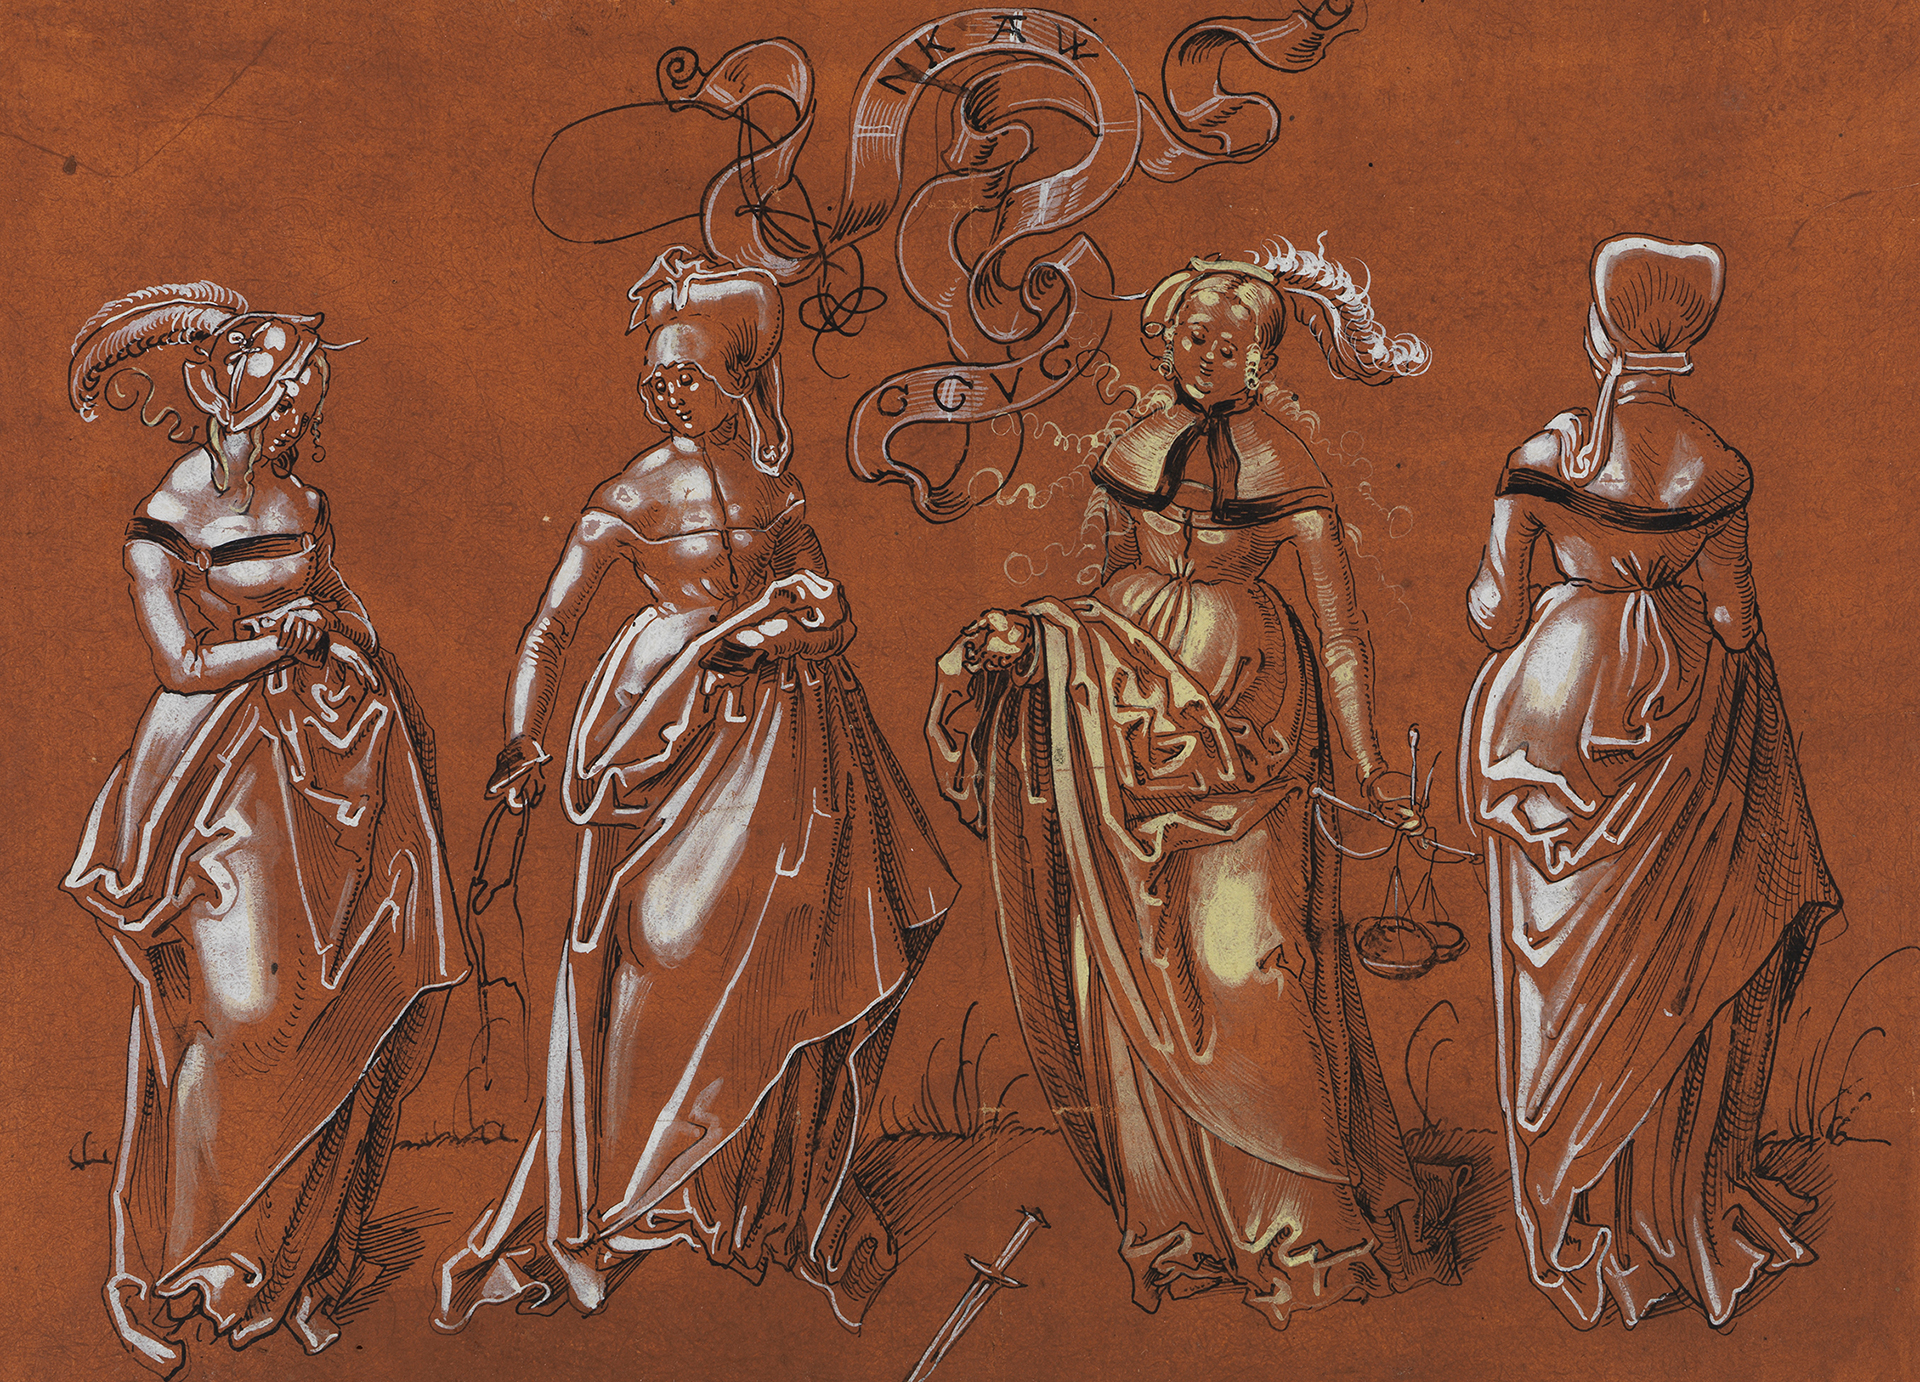 Das Kunstwerk zeigt eine Zeichnung von vier Frauen in mittelalterlicher Kleidung.